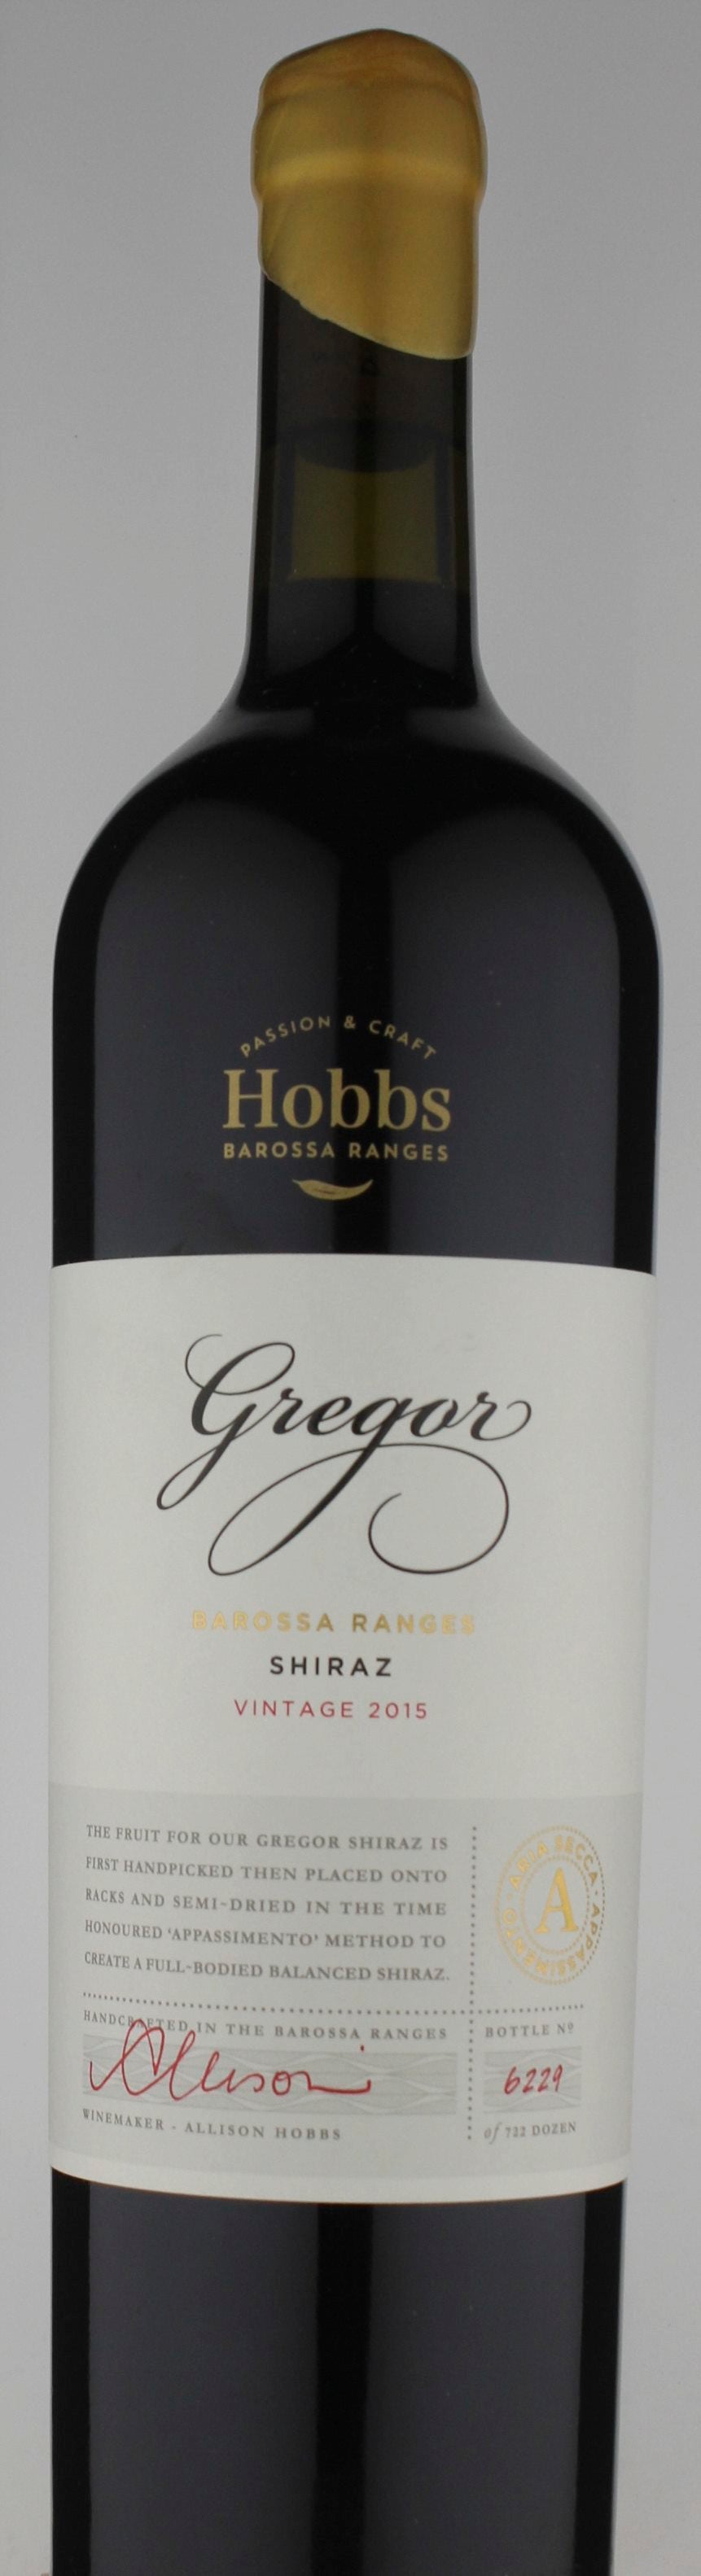 Hobbs Gregor Shiraz 2015